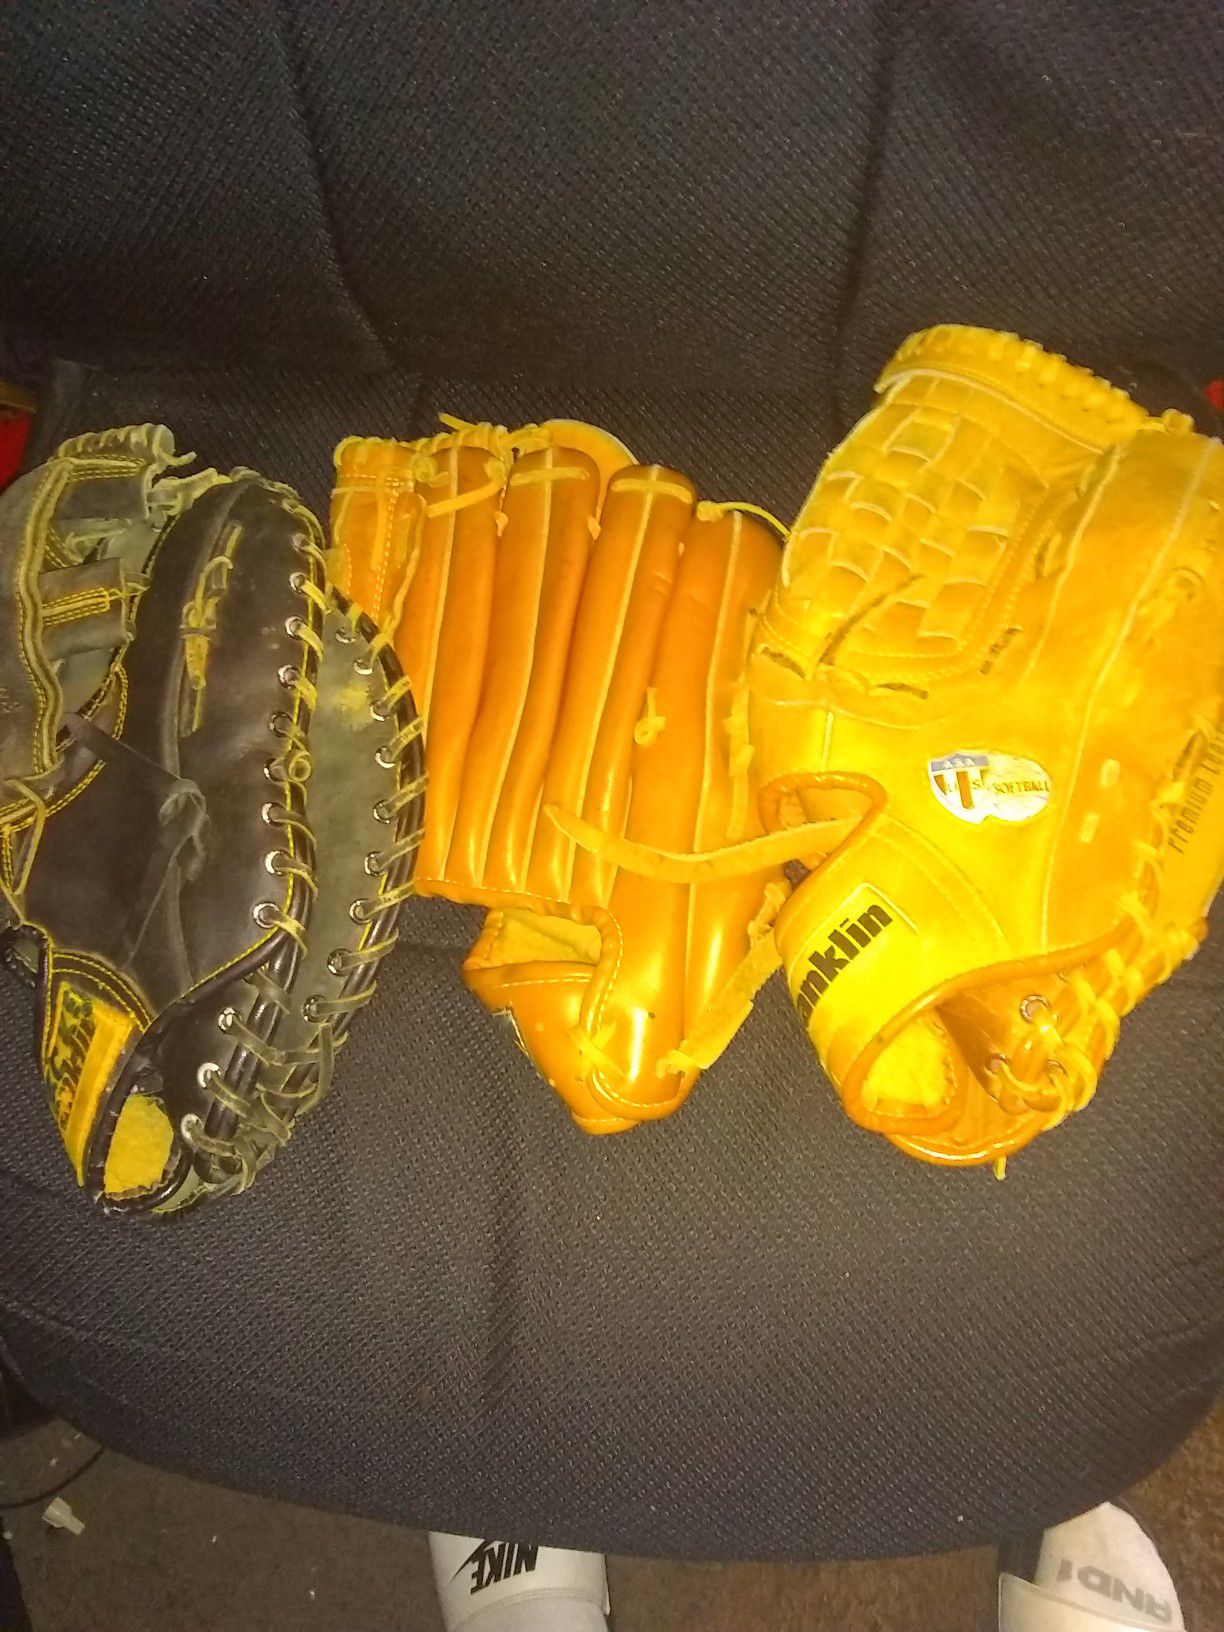 3-baseball gloves. Franklin great shape